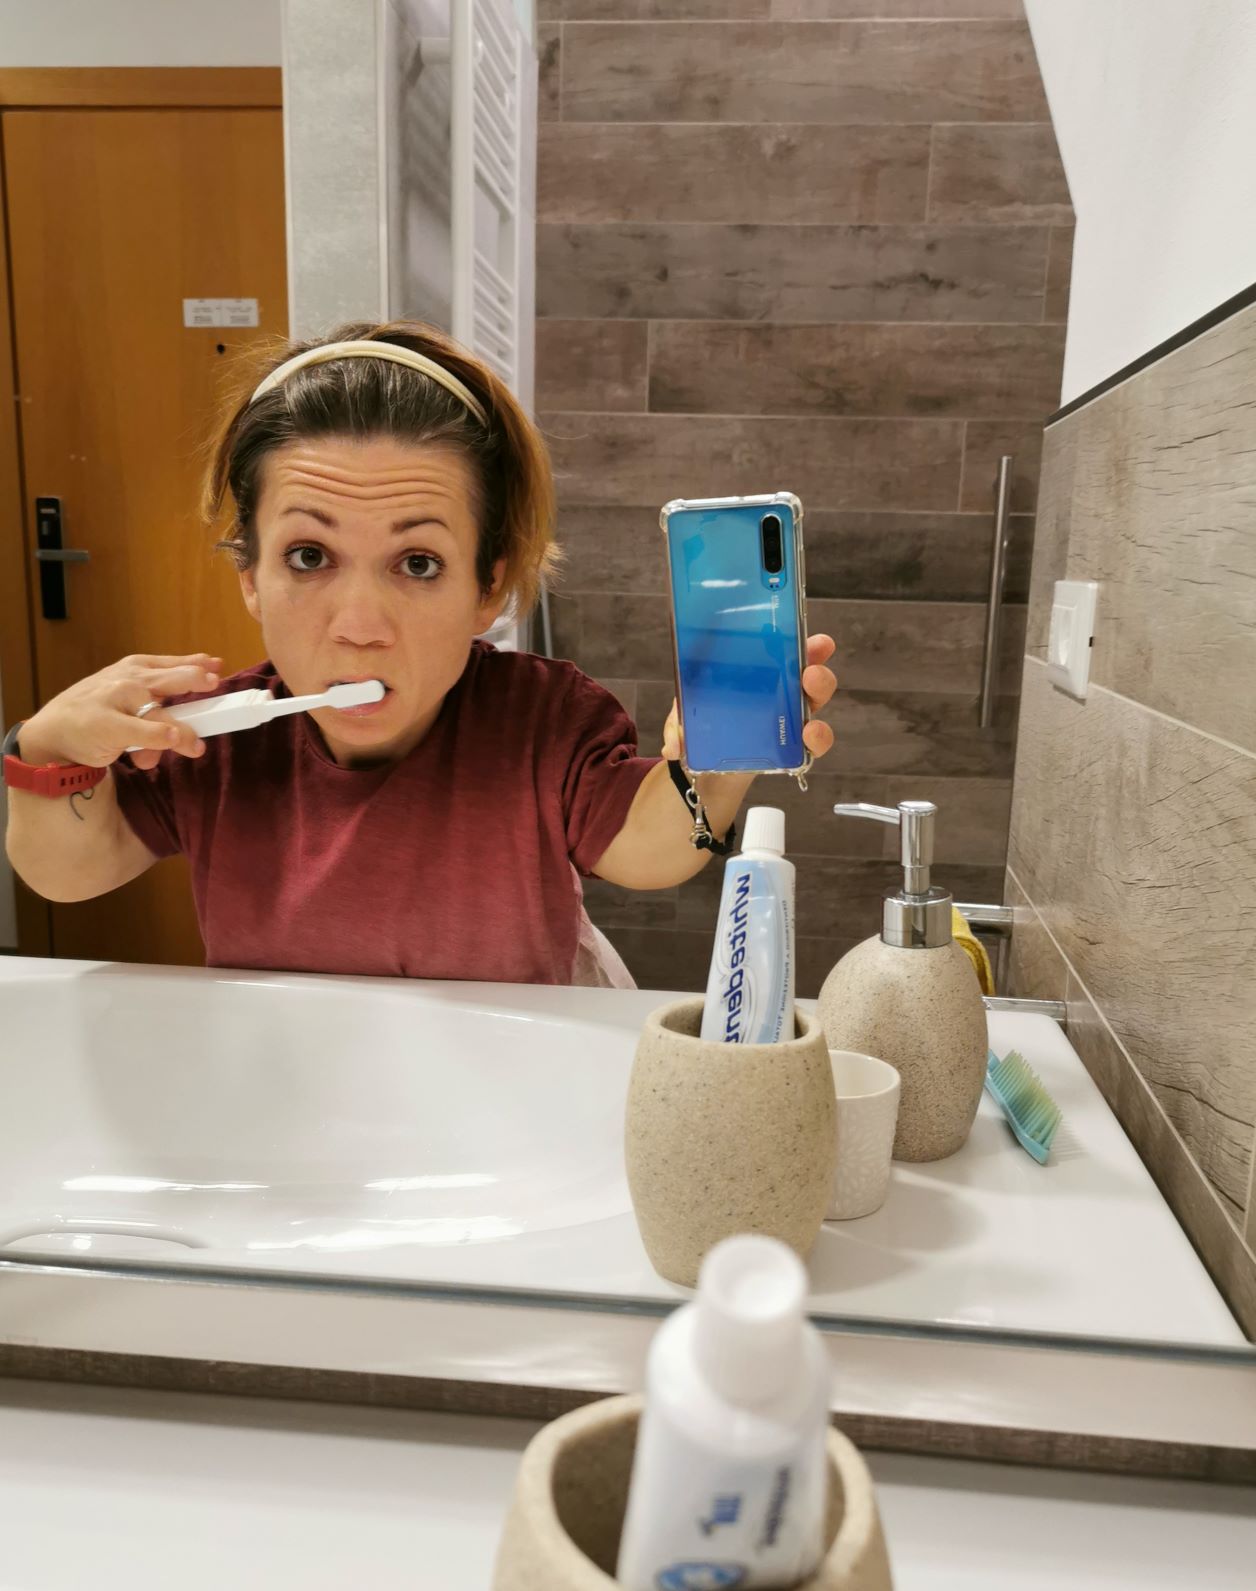 Nanabianca si fa un selfie allo specchio mentre si lava i denti